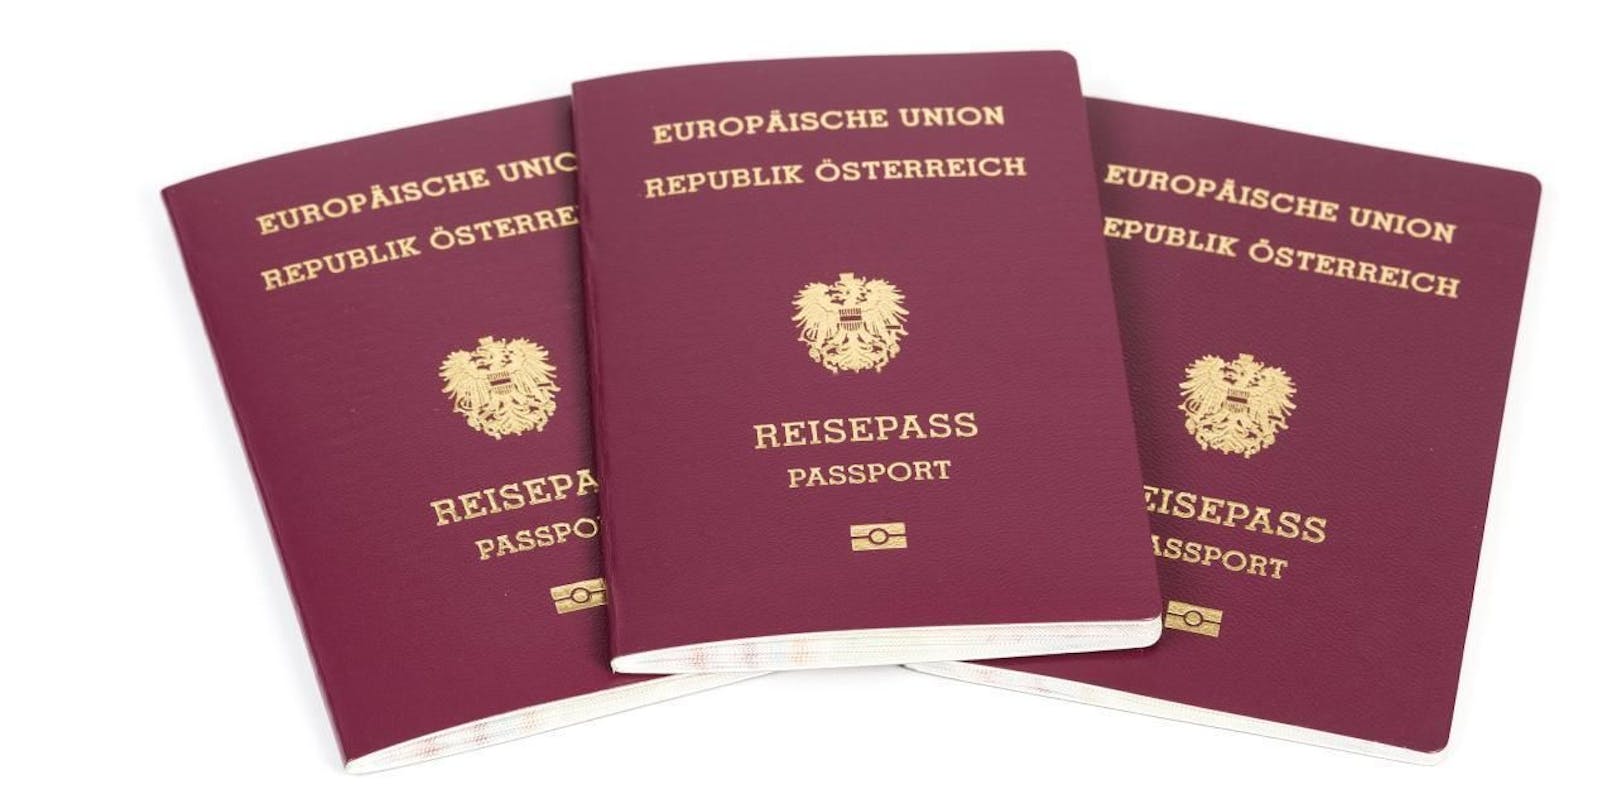 St. Pölten rechnet kommendes Jahr mit 9.000 Reisepass-Anträgen.